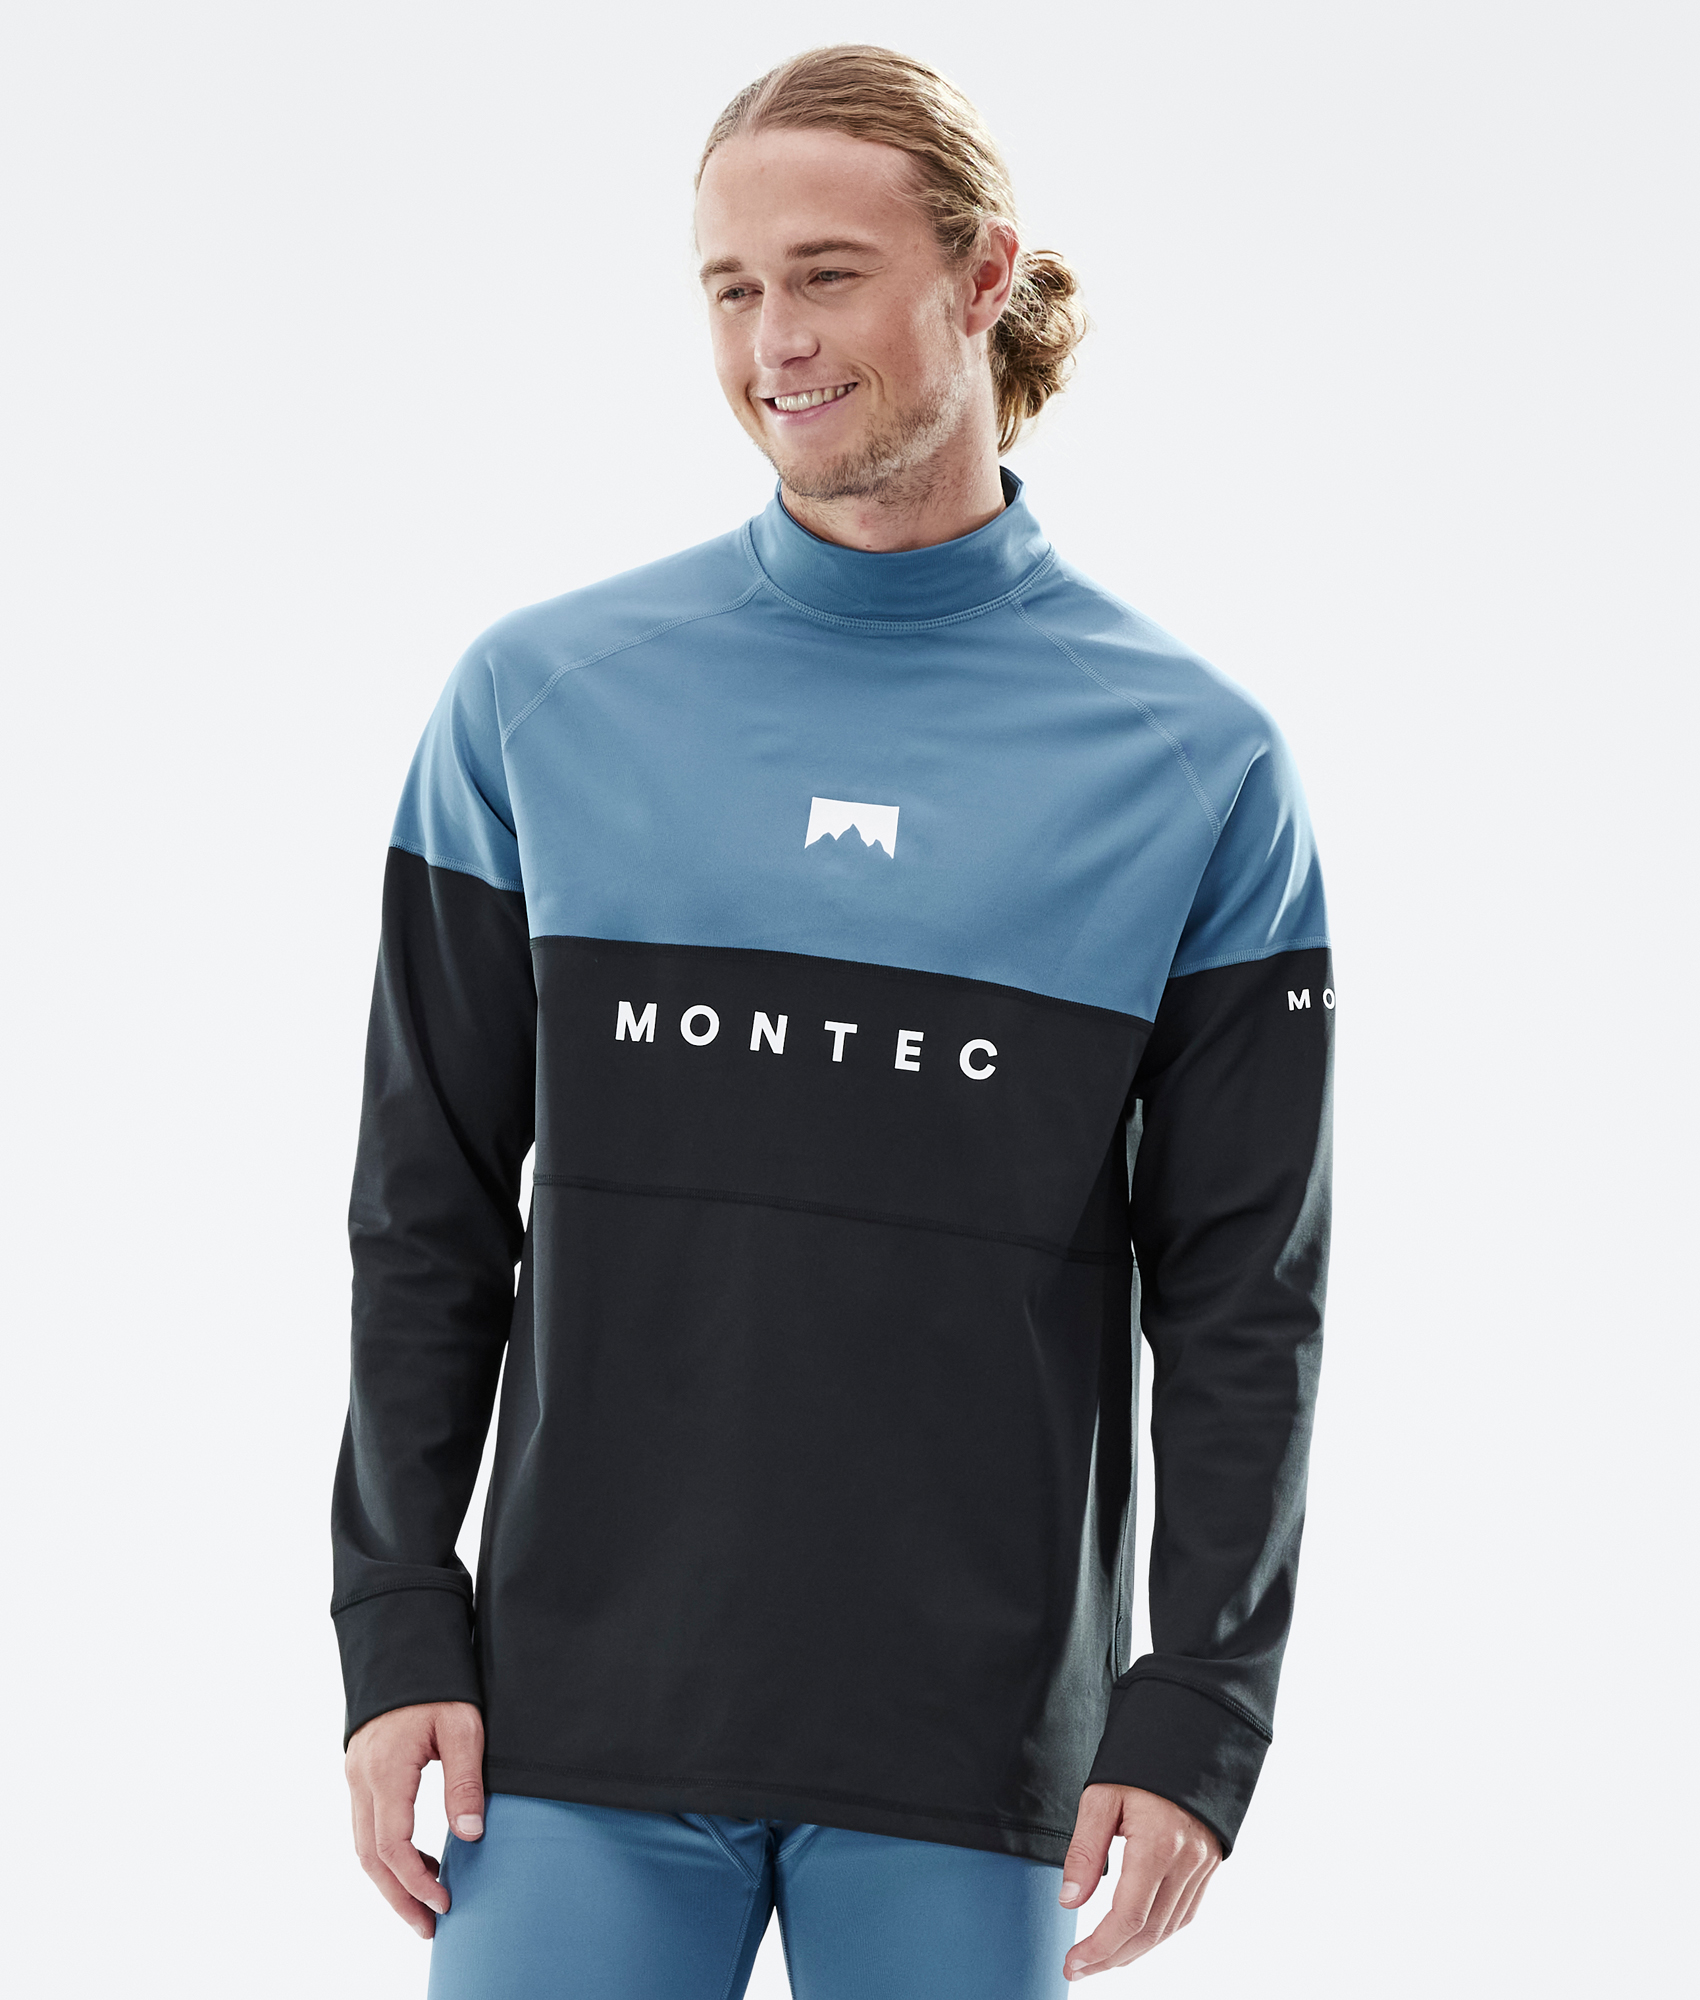 Montec Alpha Tee-shirt thermique Homme Sand/Black/Metal Blue